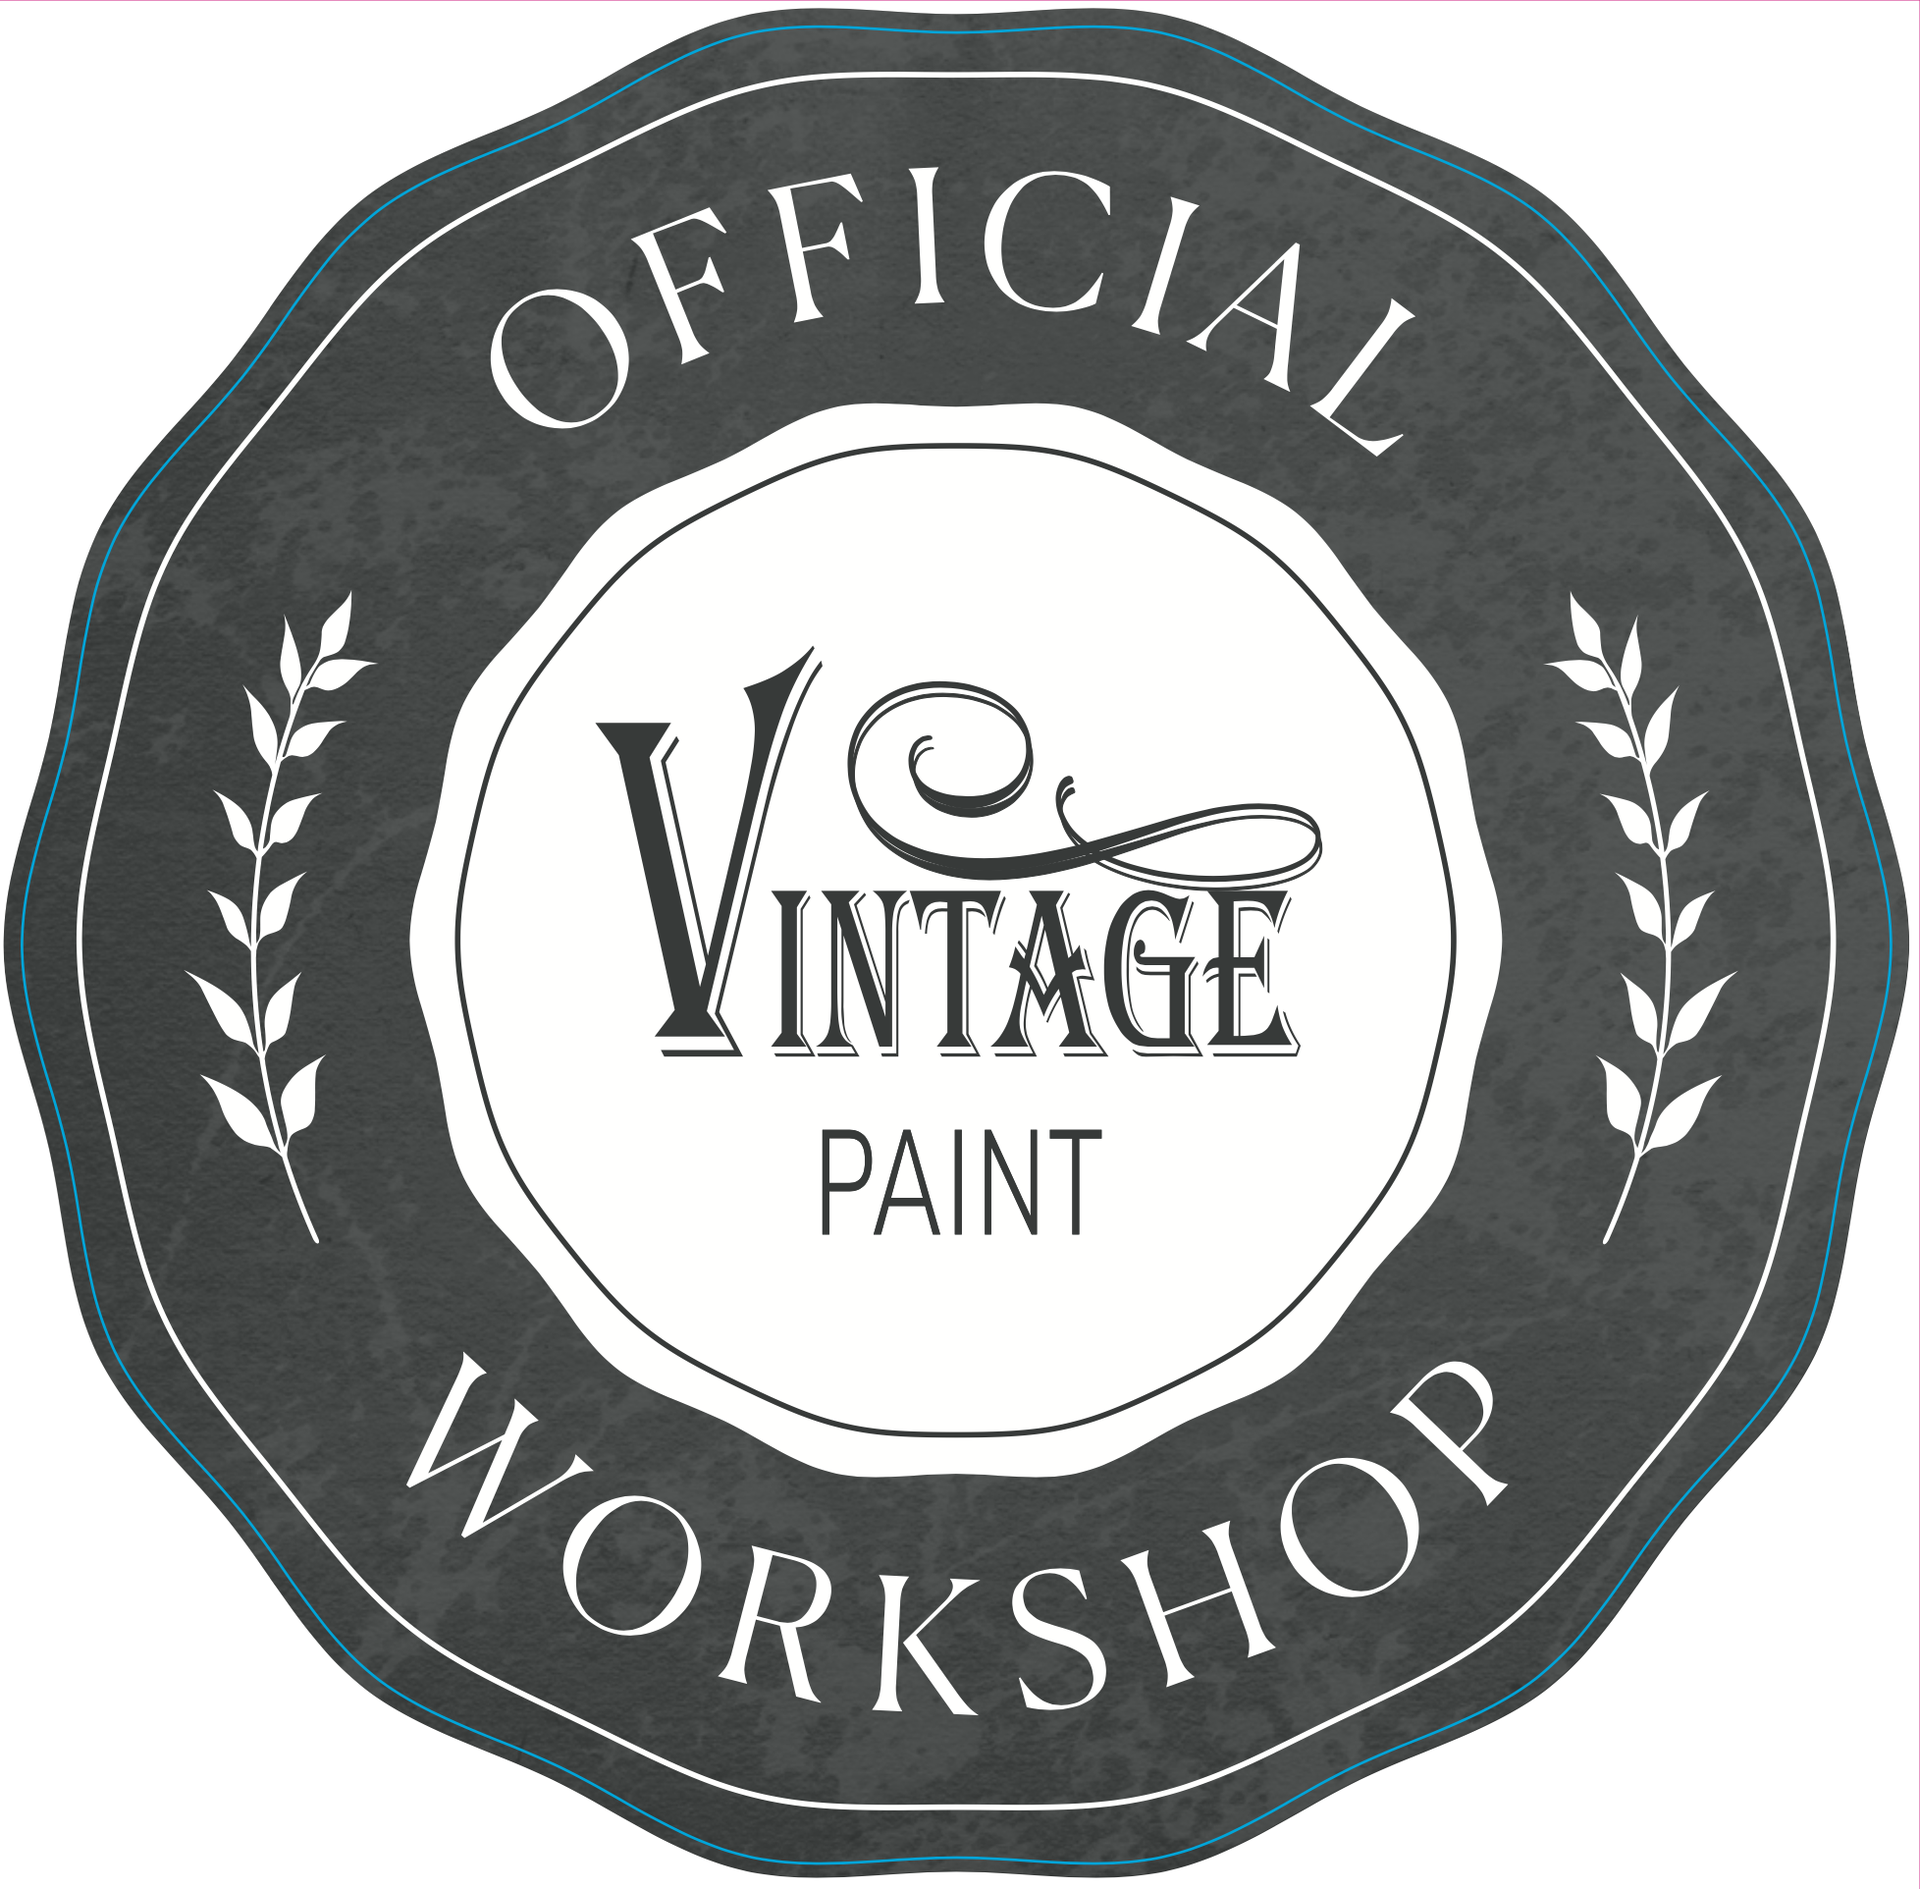 [shop sticker] Workshop double sided window Sticker (2) 25 cm Vintage Paint in Dark Lavender